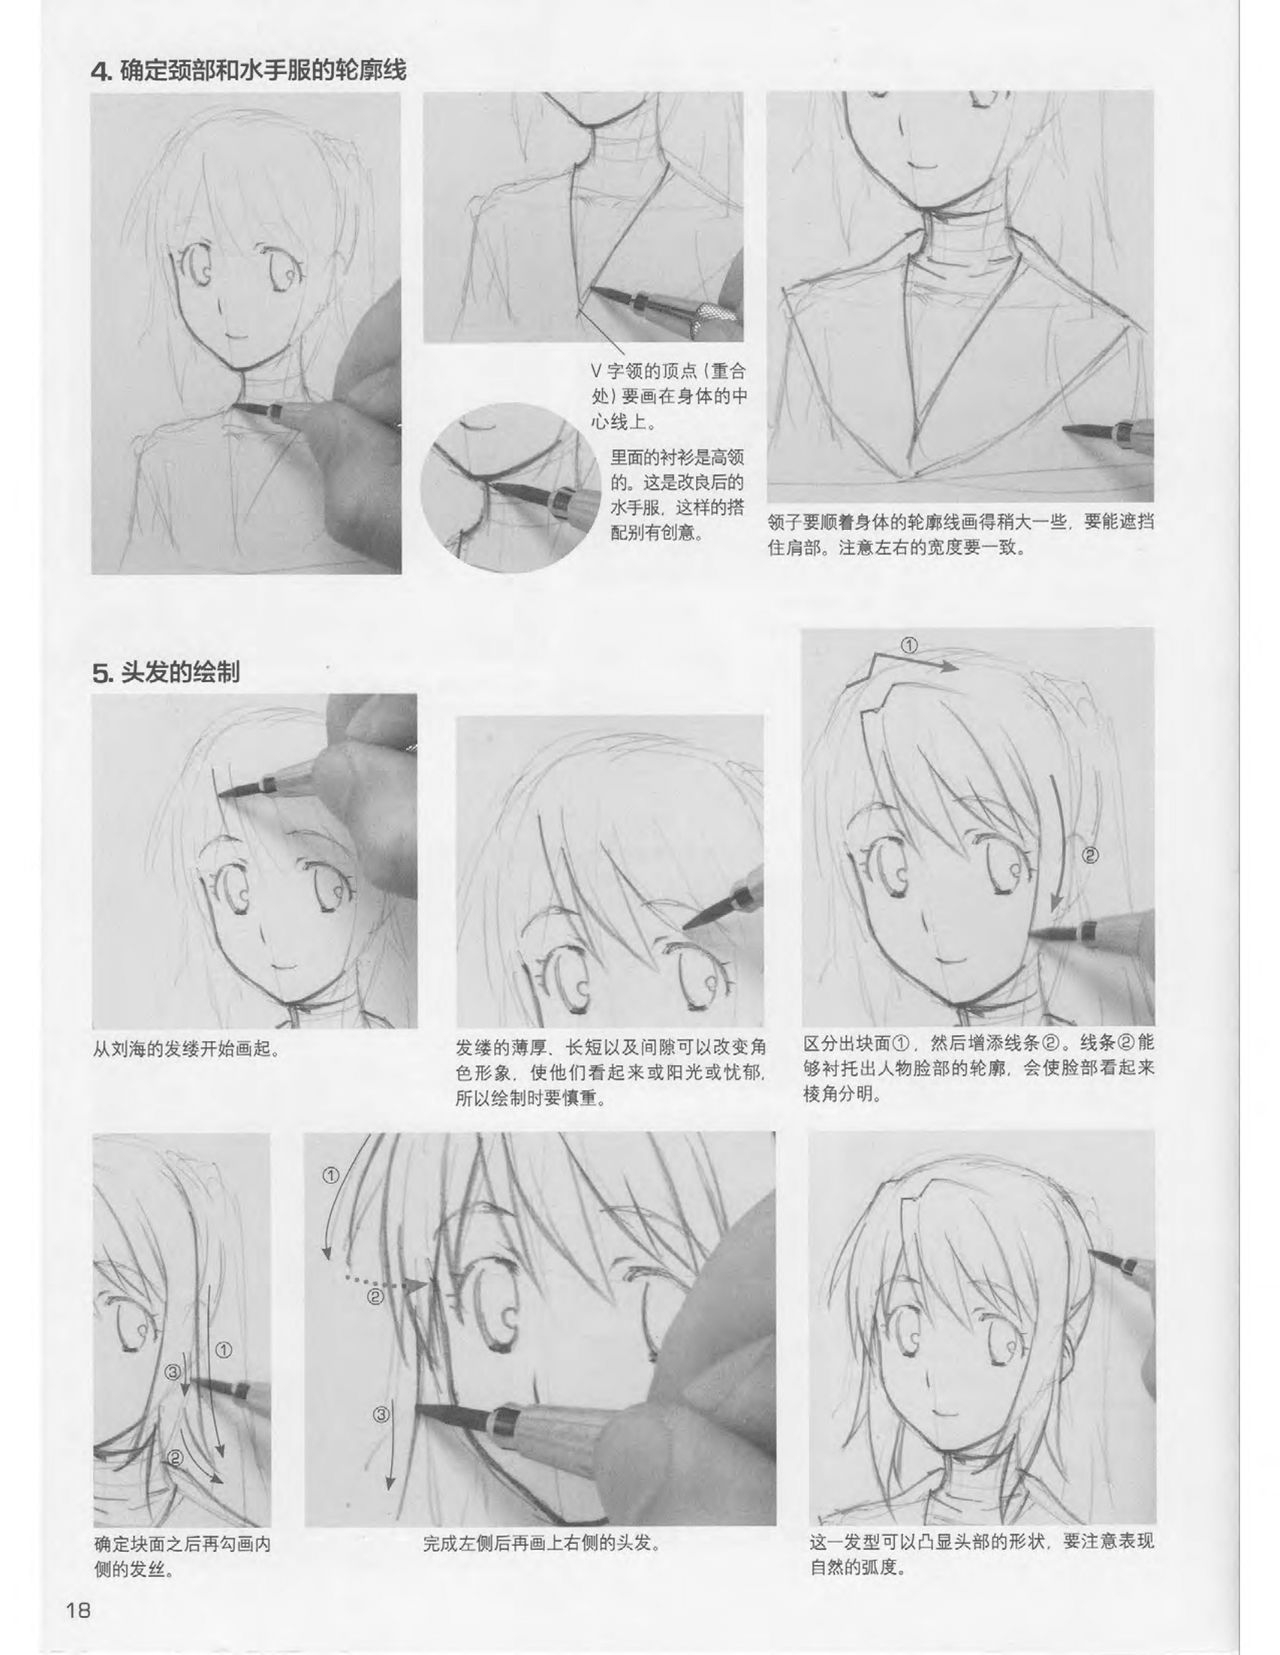 Japanese Manga Master Lecture 3: Lin Akira and Kakumaru Maru Talk About Glamorous Character Modeling 18